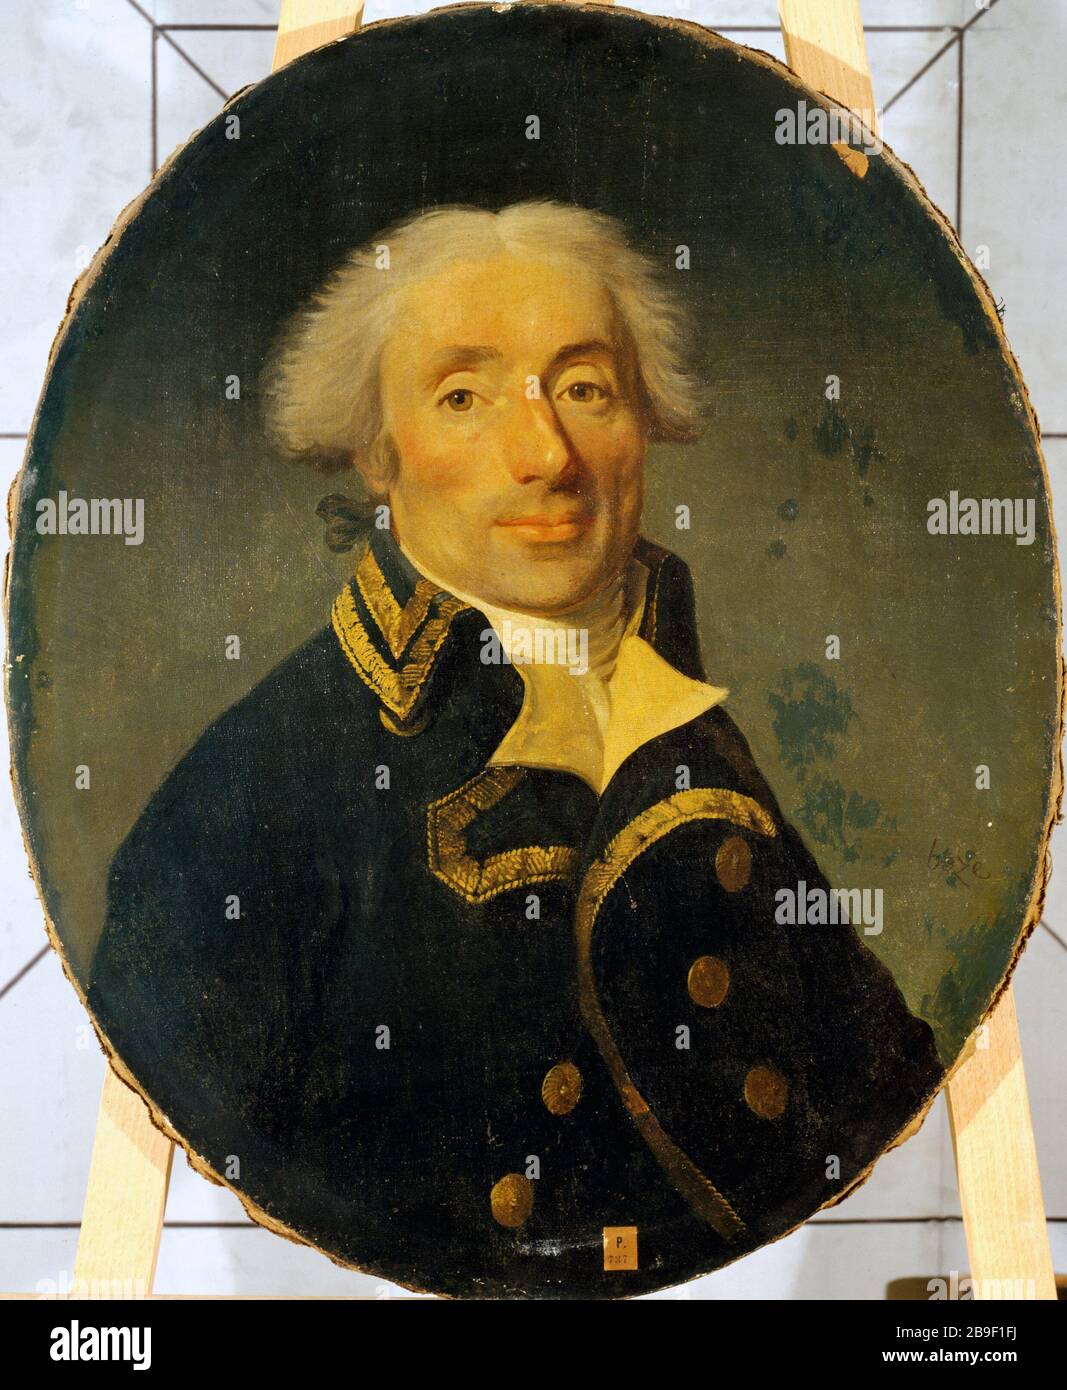 PORTRAIT OF A GENERAL DIVISION Joseph Boze (1744-1826). 'Portrait d'un général de division entre 1791 et 1794'. Huile sur toile. Paris, musée Carnavalet. Stock Photo